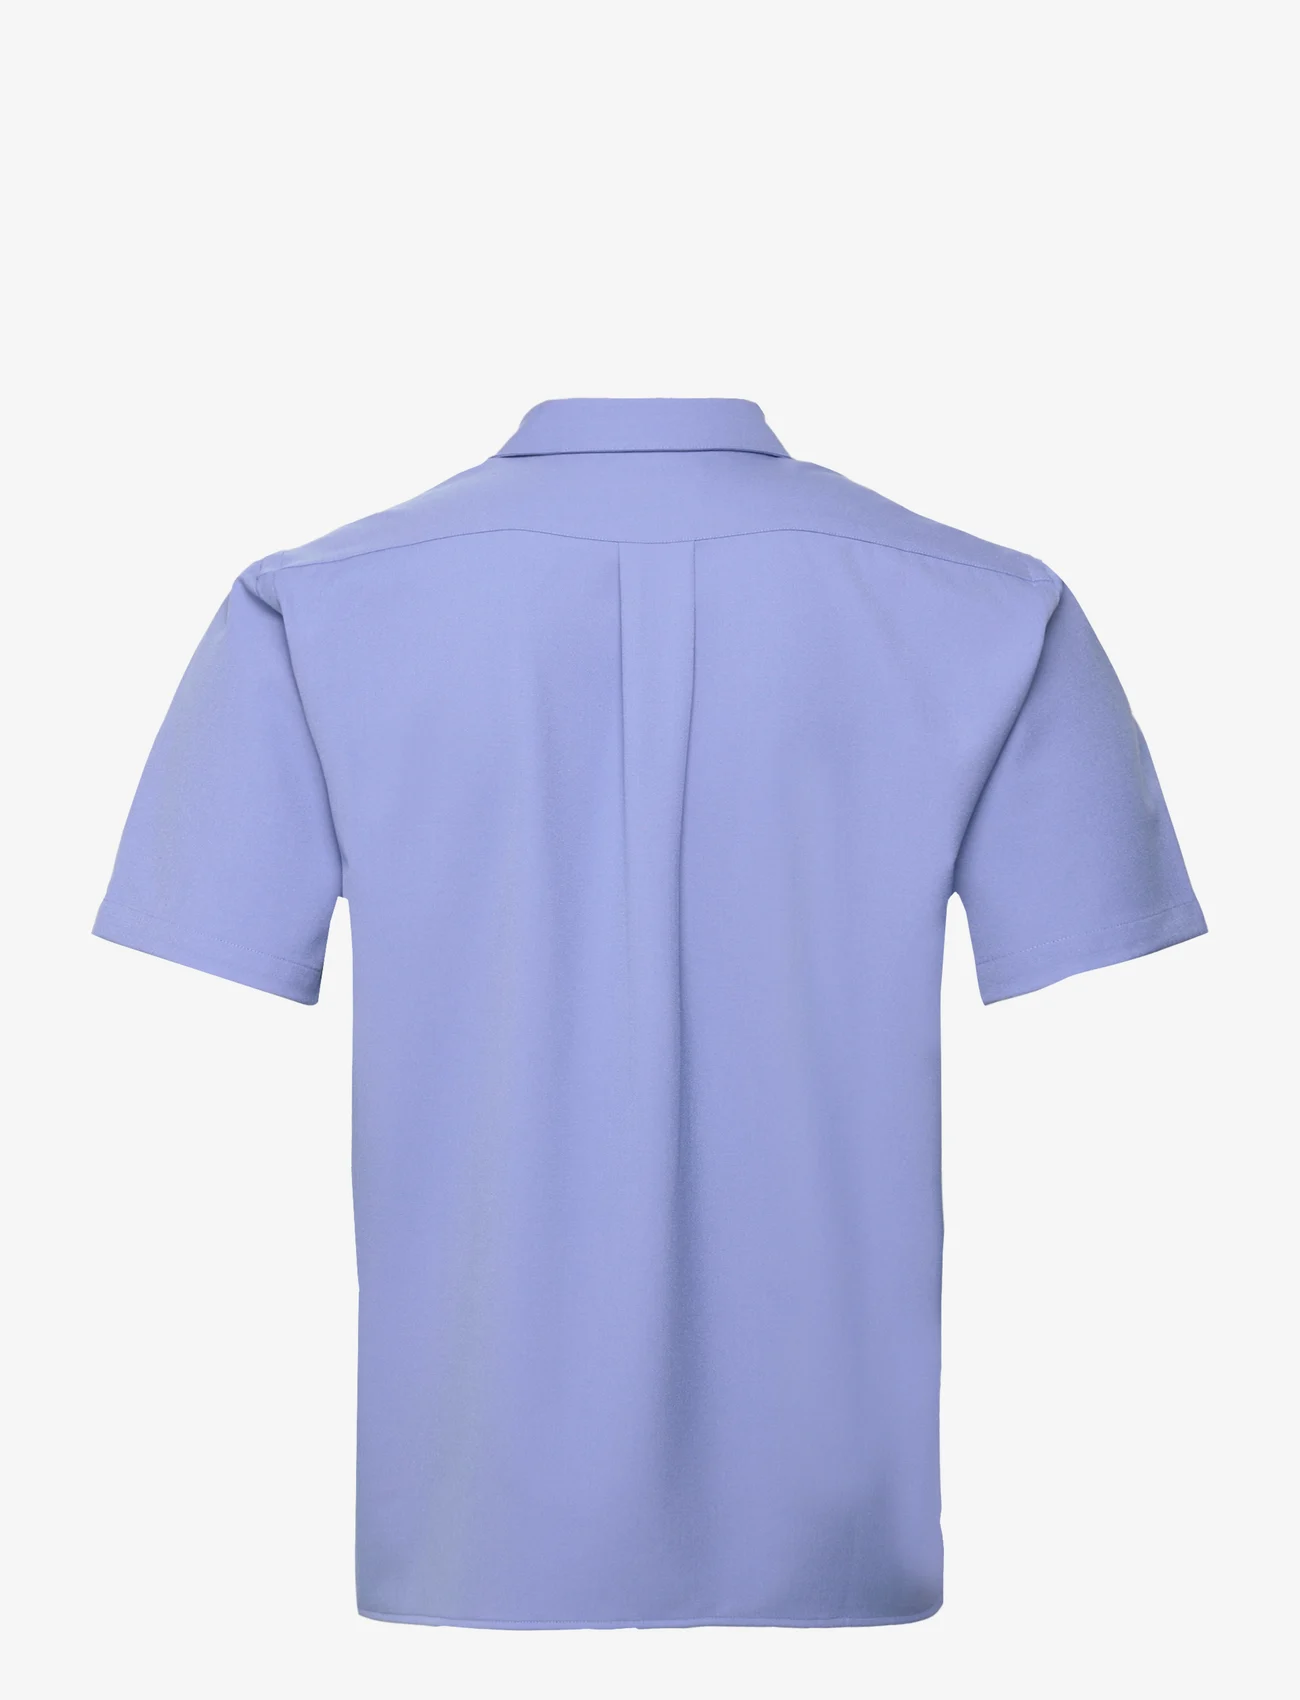 Libertine-Libertine - Cave - basic skjortor - sky blue - 1